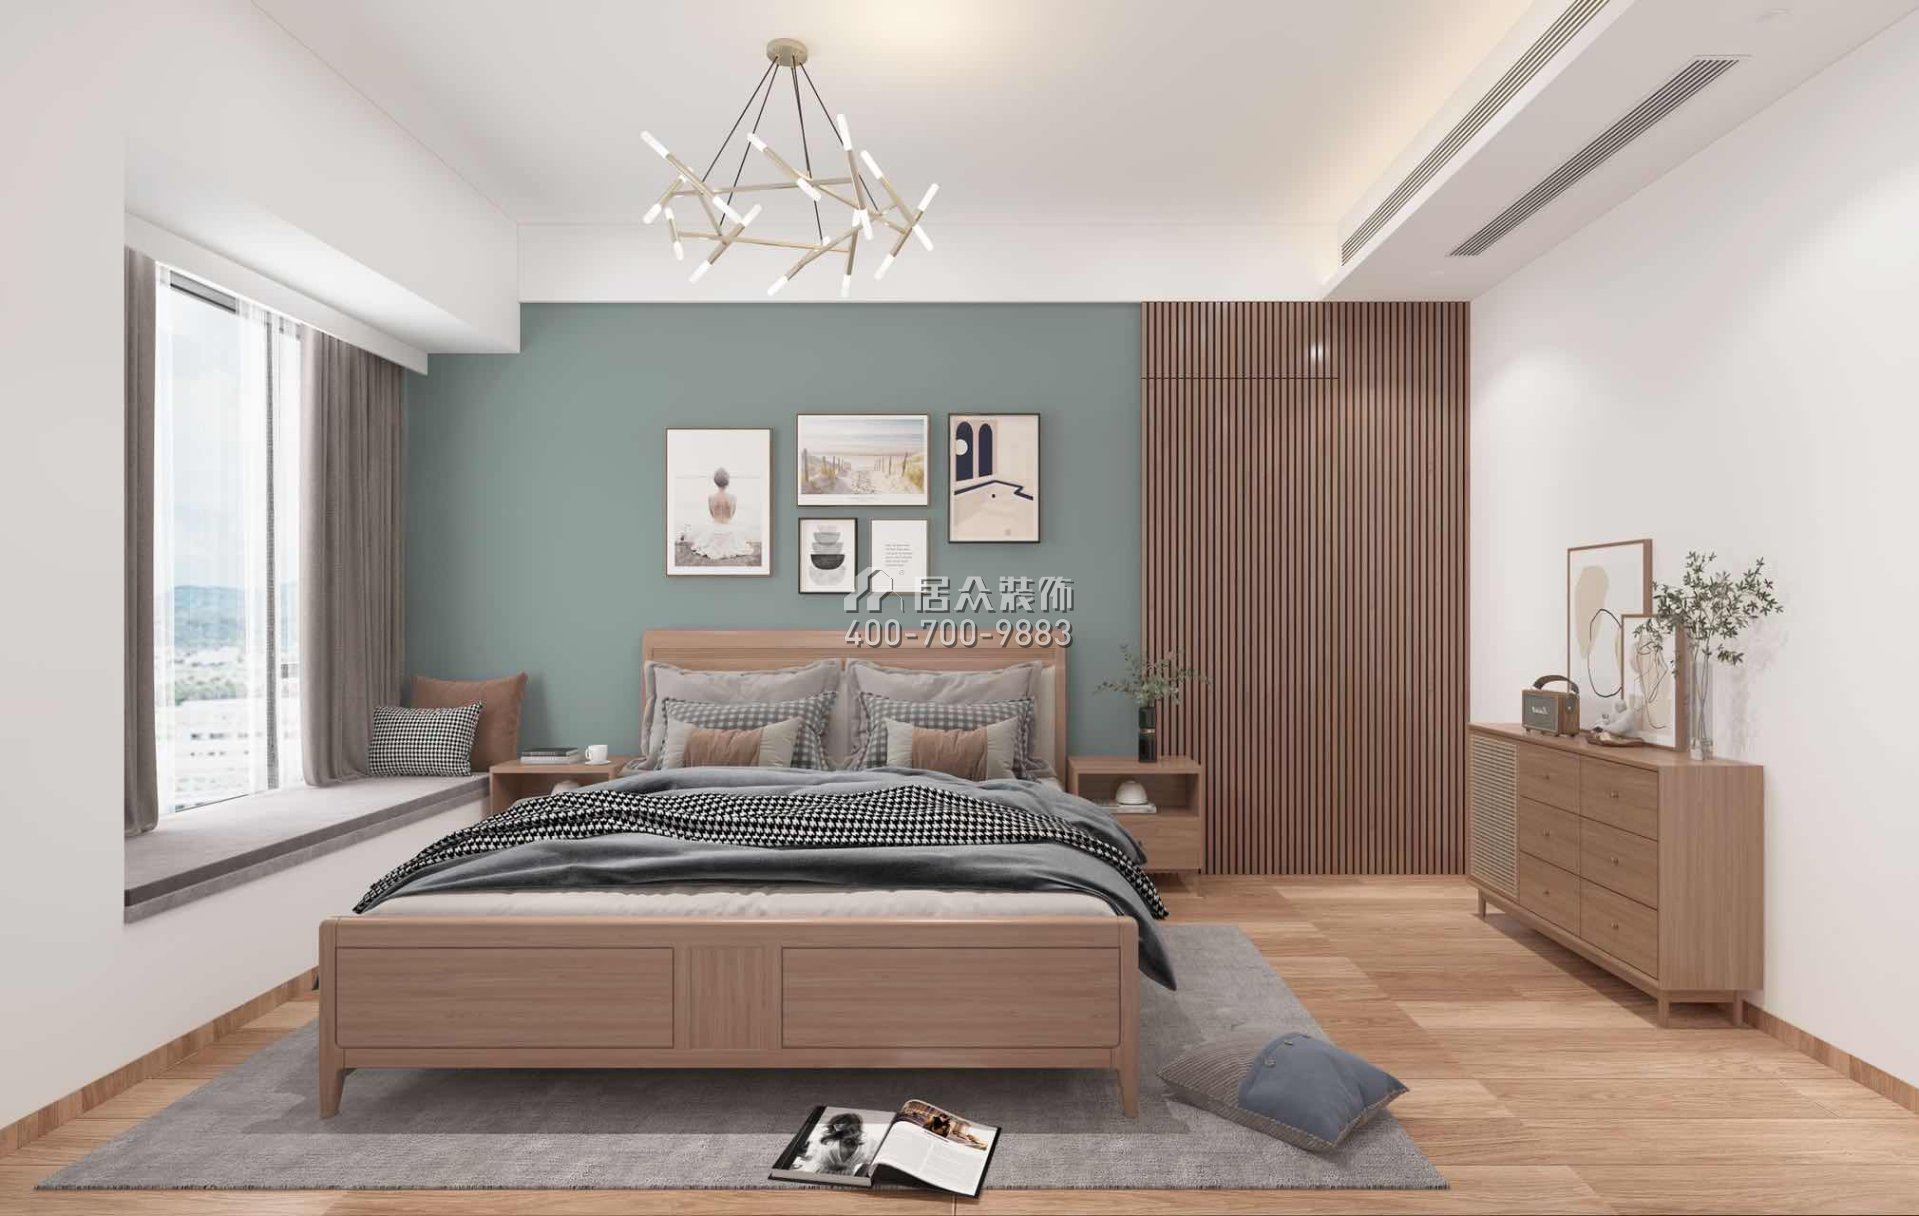 颐湾府112平方米现代简约风格平层户型卧室装修效果图